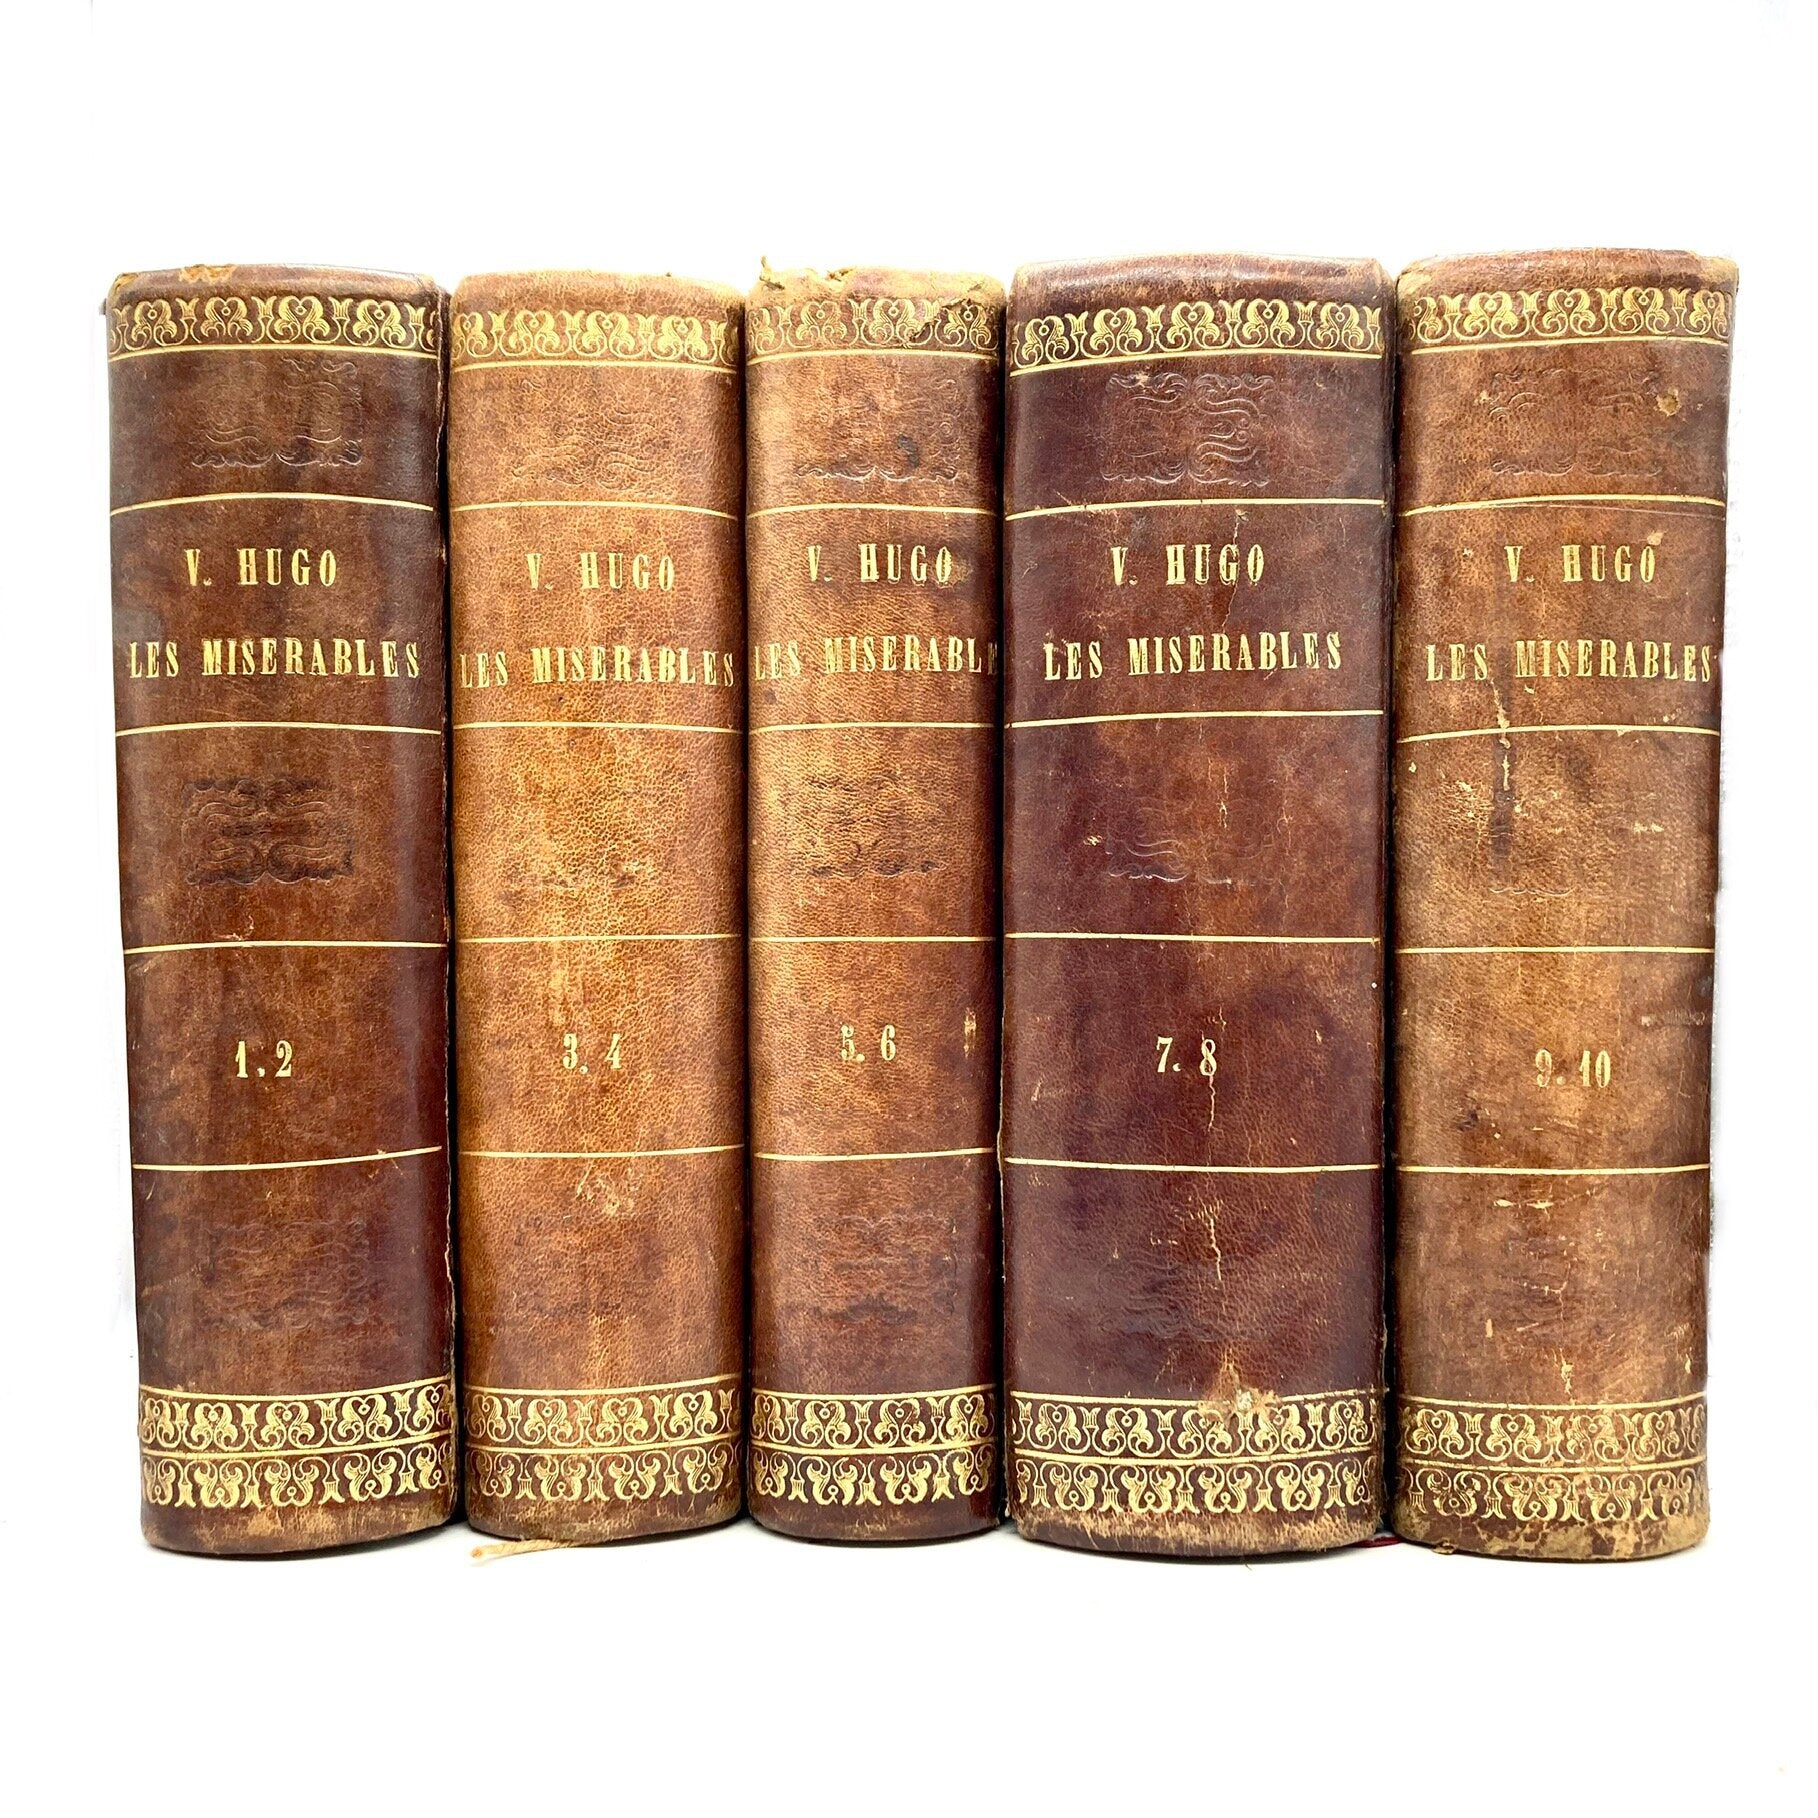 HUGO, Victor "Les Miserables" [Lacroix, Verboeckhoven & Ce, 1862] 1st Edition - Buzz Bookstore